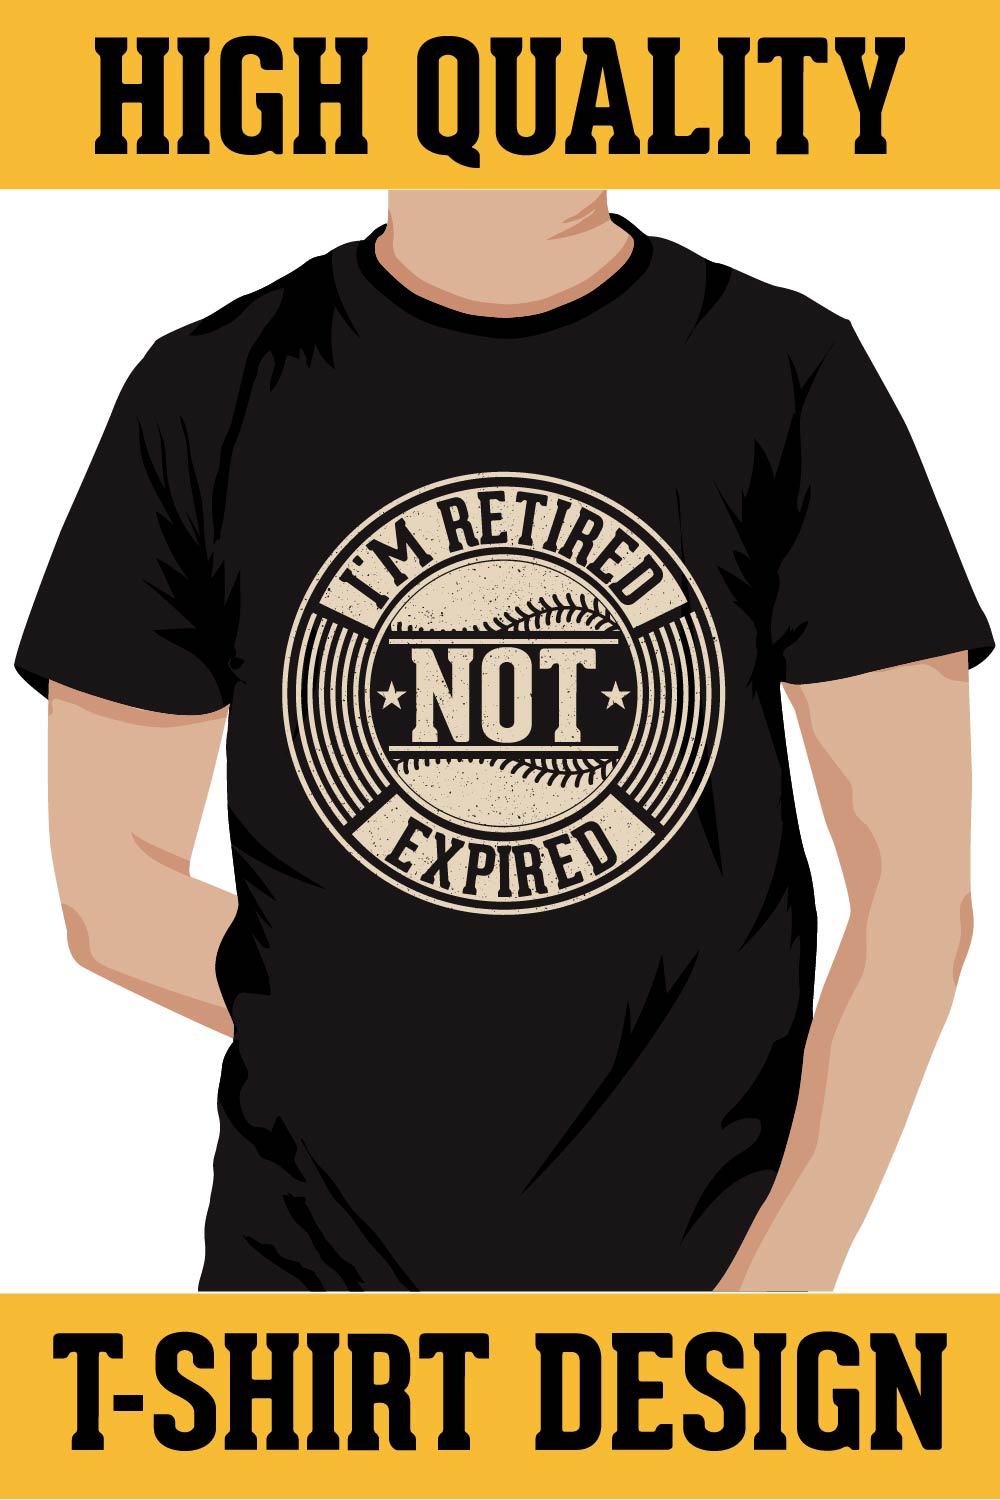 Baseball T-shirt Design, I'm Retired not expired pinterest preview image.